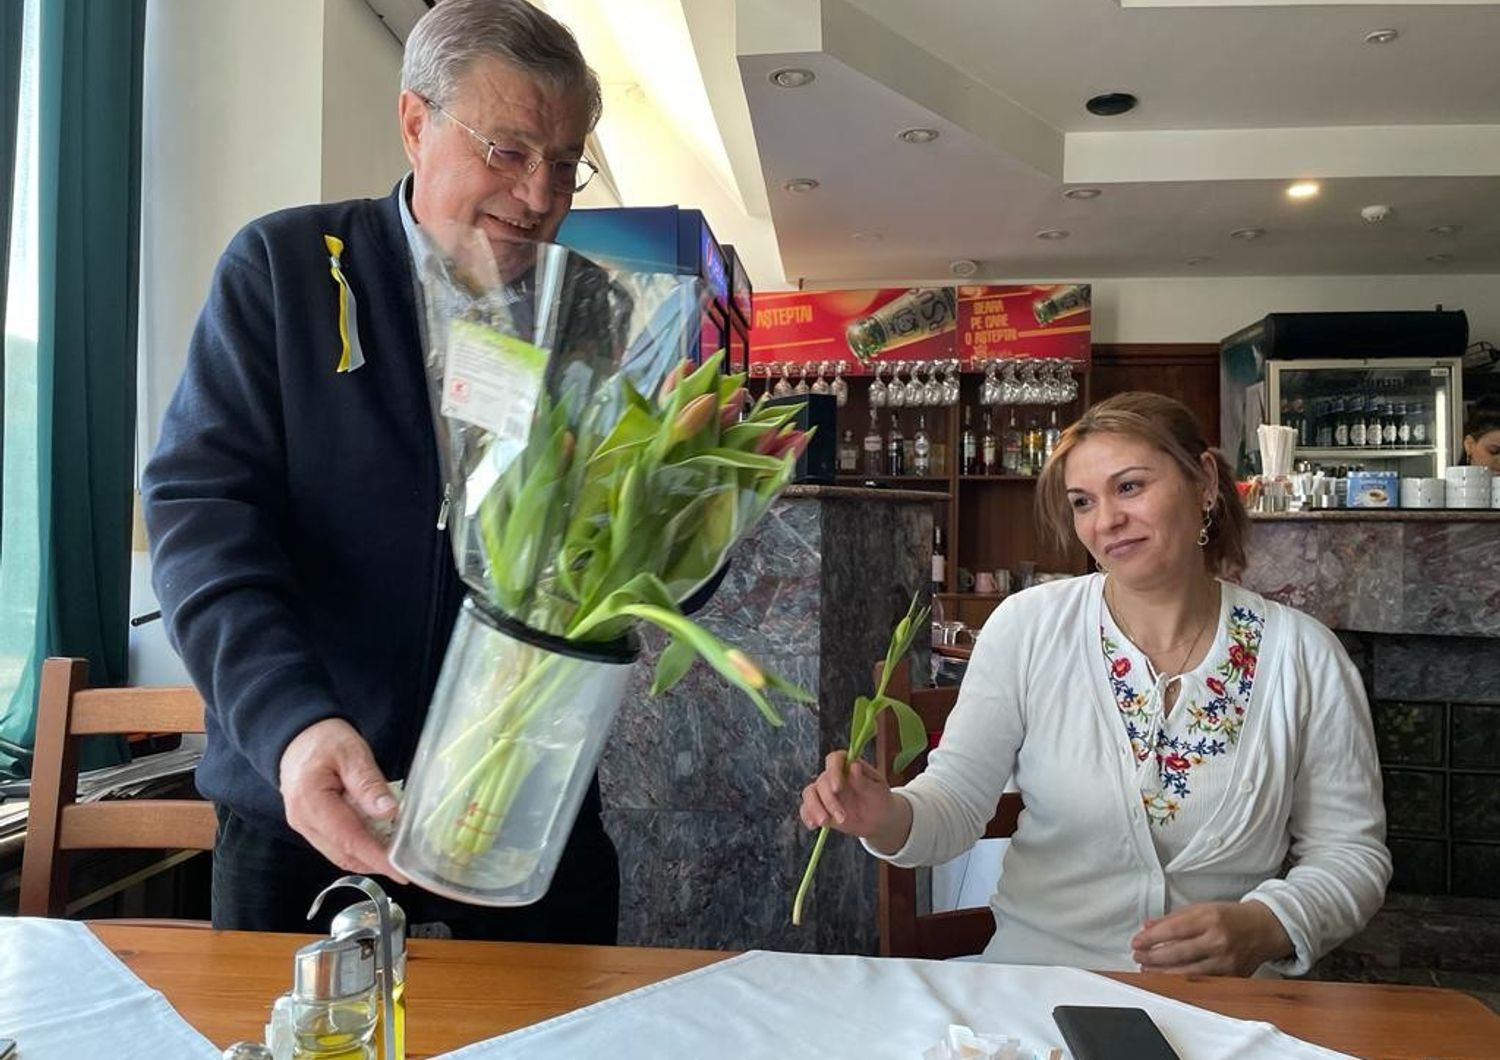 L'albergatore romeno che offre fiori alle ospiti ucraine